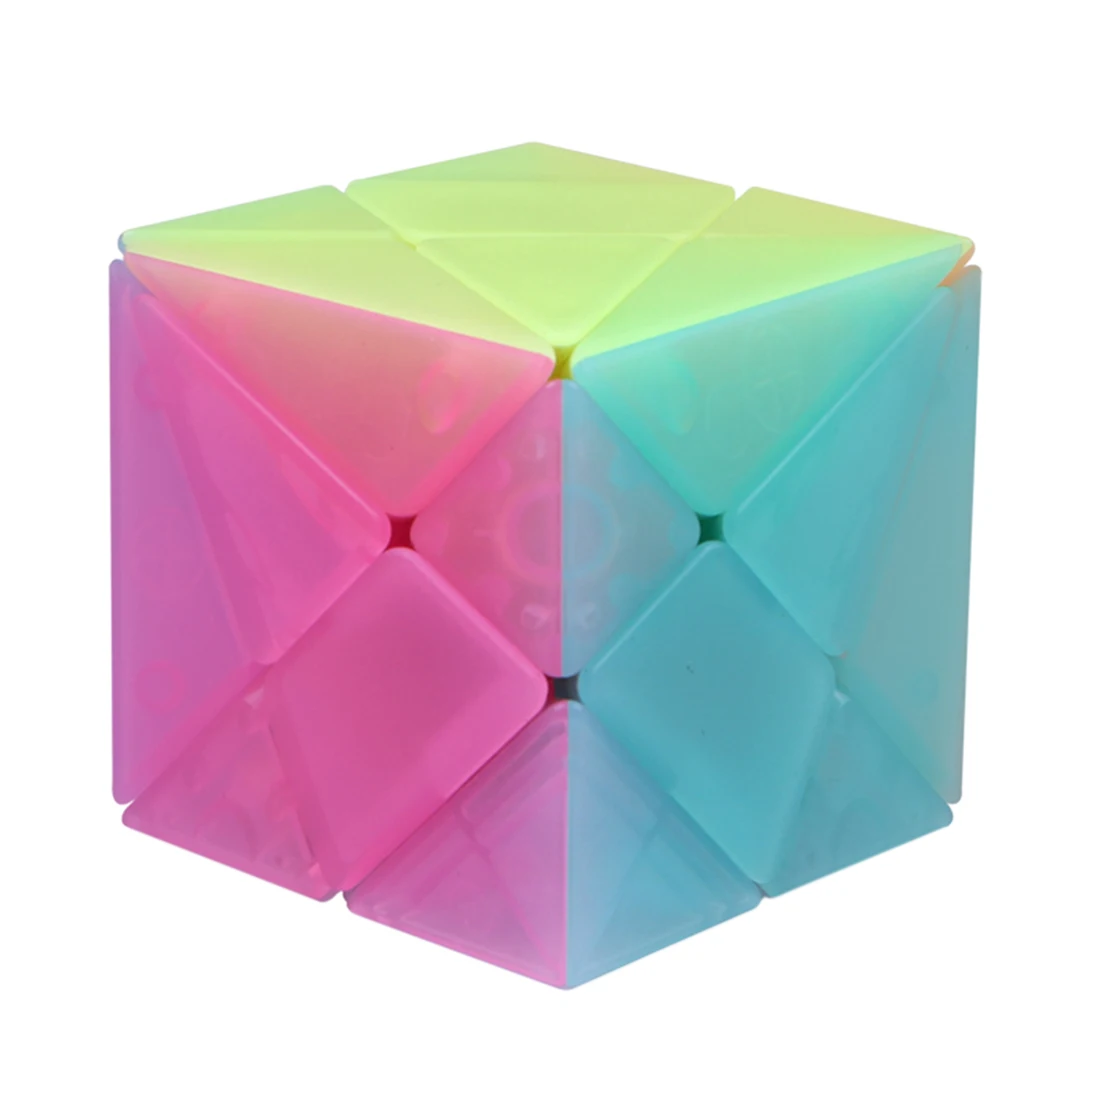 Qiyi Axis волшебный куб головоломка куб ранняя развивающая игрушка для детей куб-желе цвет